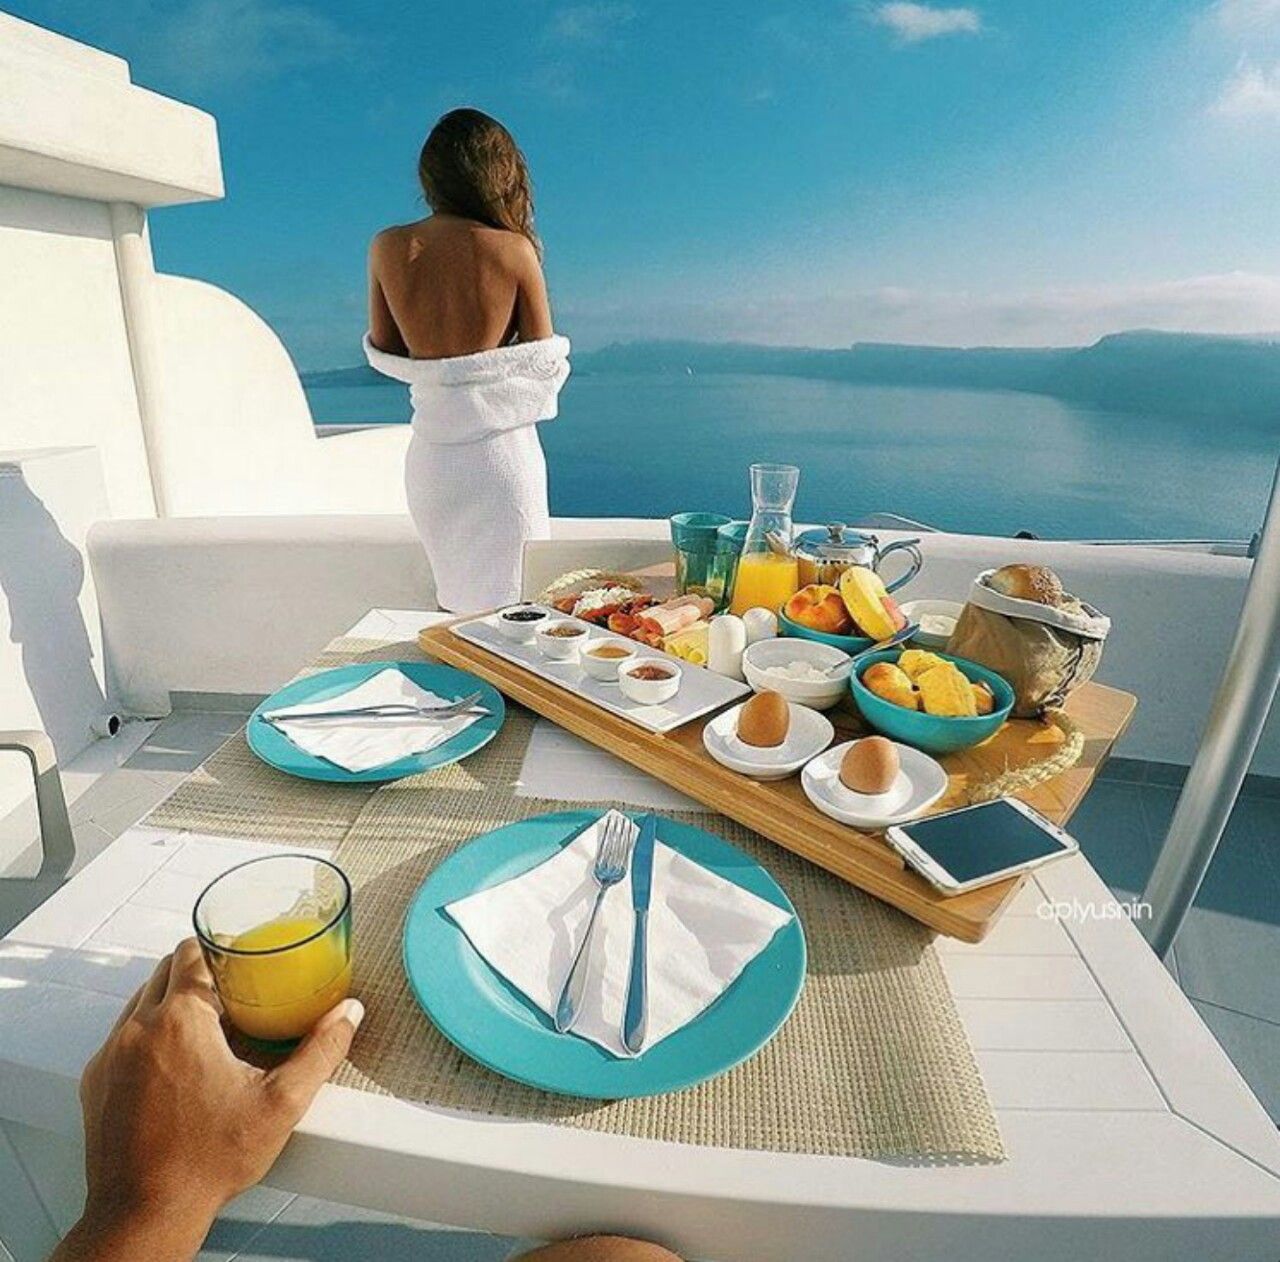 Беречь завтрак. Утро на Санторини. Завтрак с видом на море. Атрибуты красивой жизни. Шикарный завтрак.